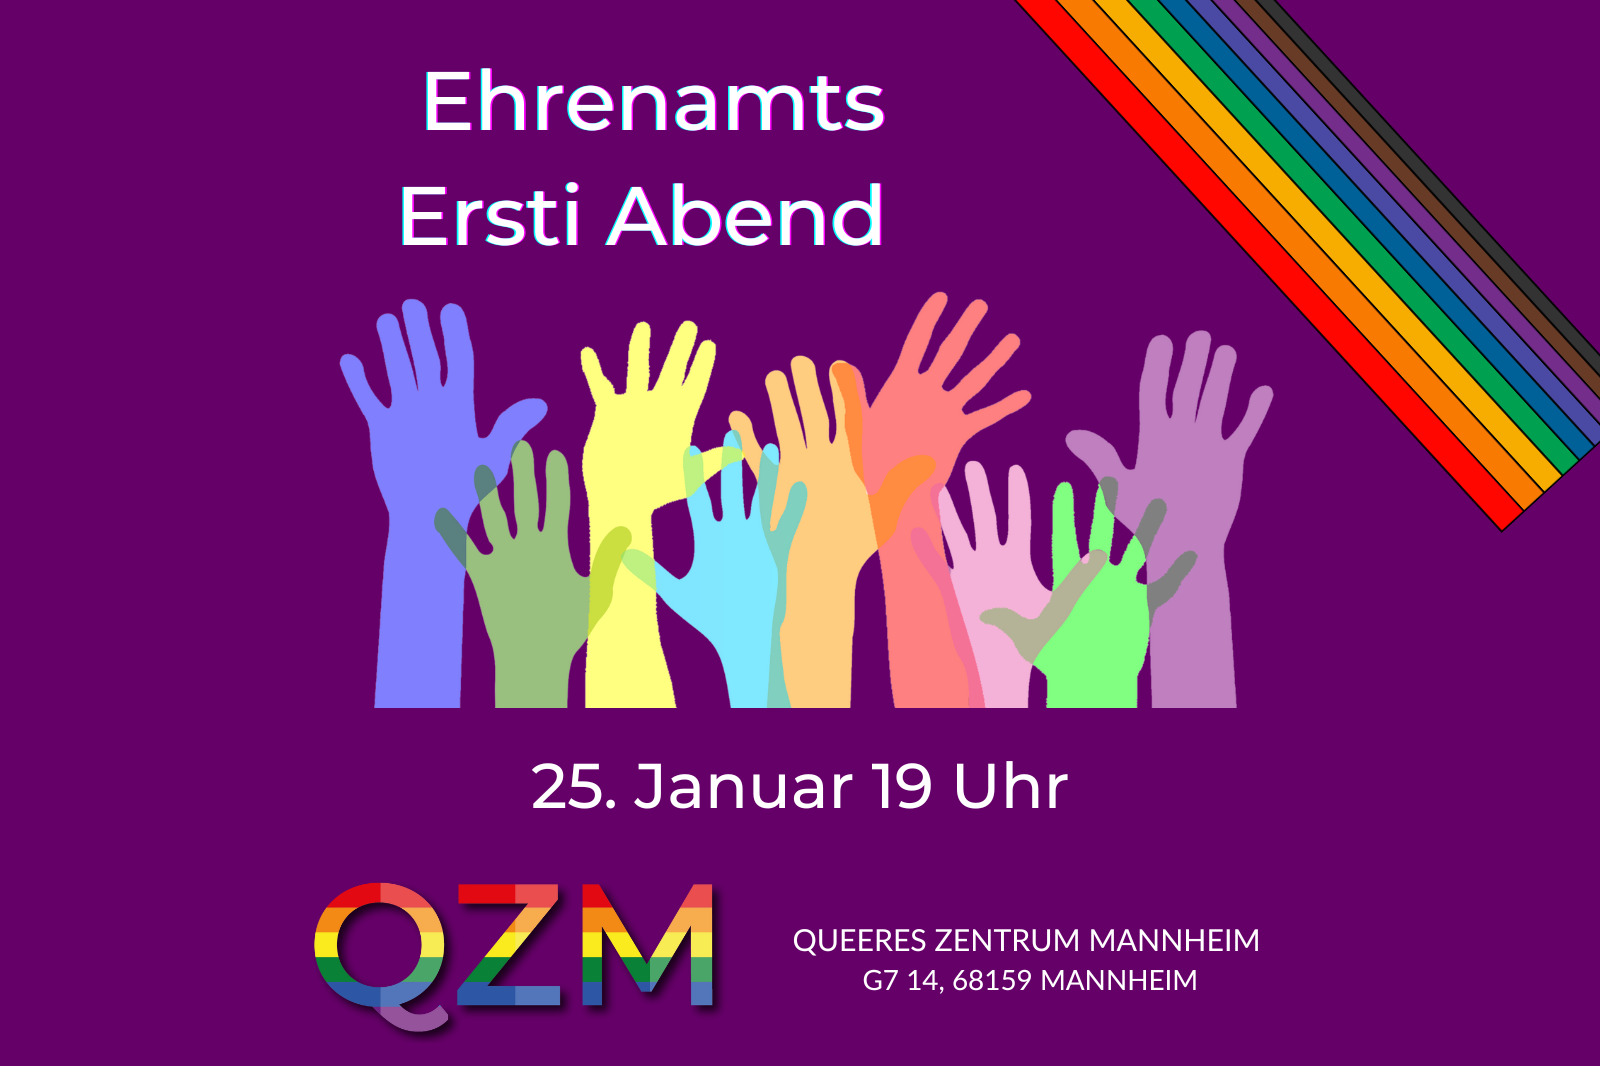 Ehrenamts Ersti Abend auf einer lila-farbenen Slides mit Händen in regenbogen Farben, die sich Richtung Titel strecken. Außerdem ist das Datum zu sehen, die Location und das Logo des QZM.